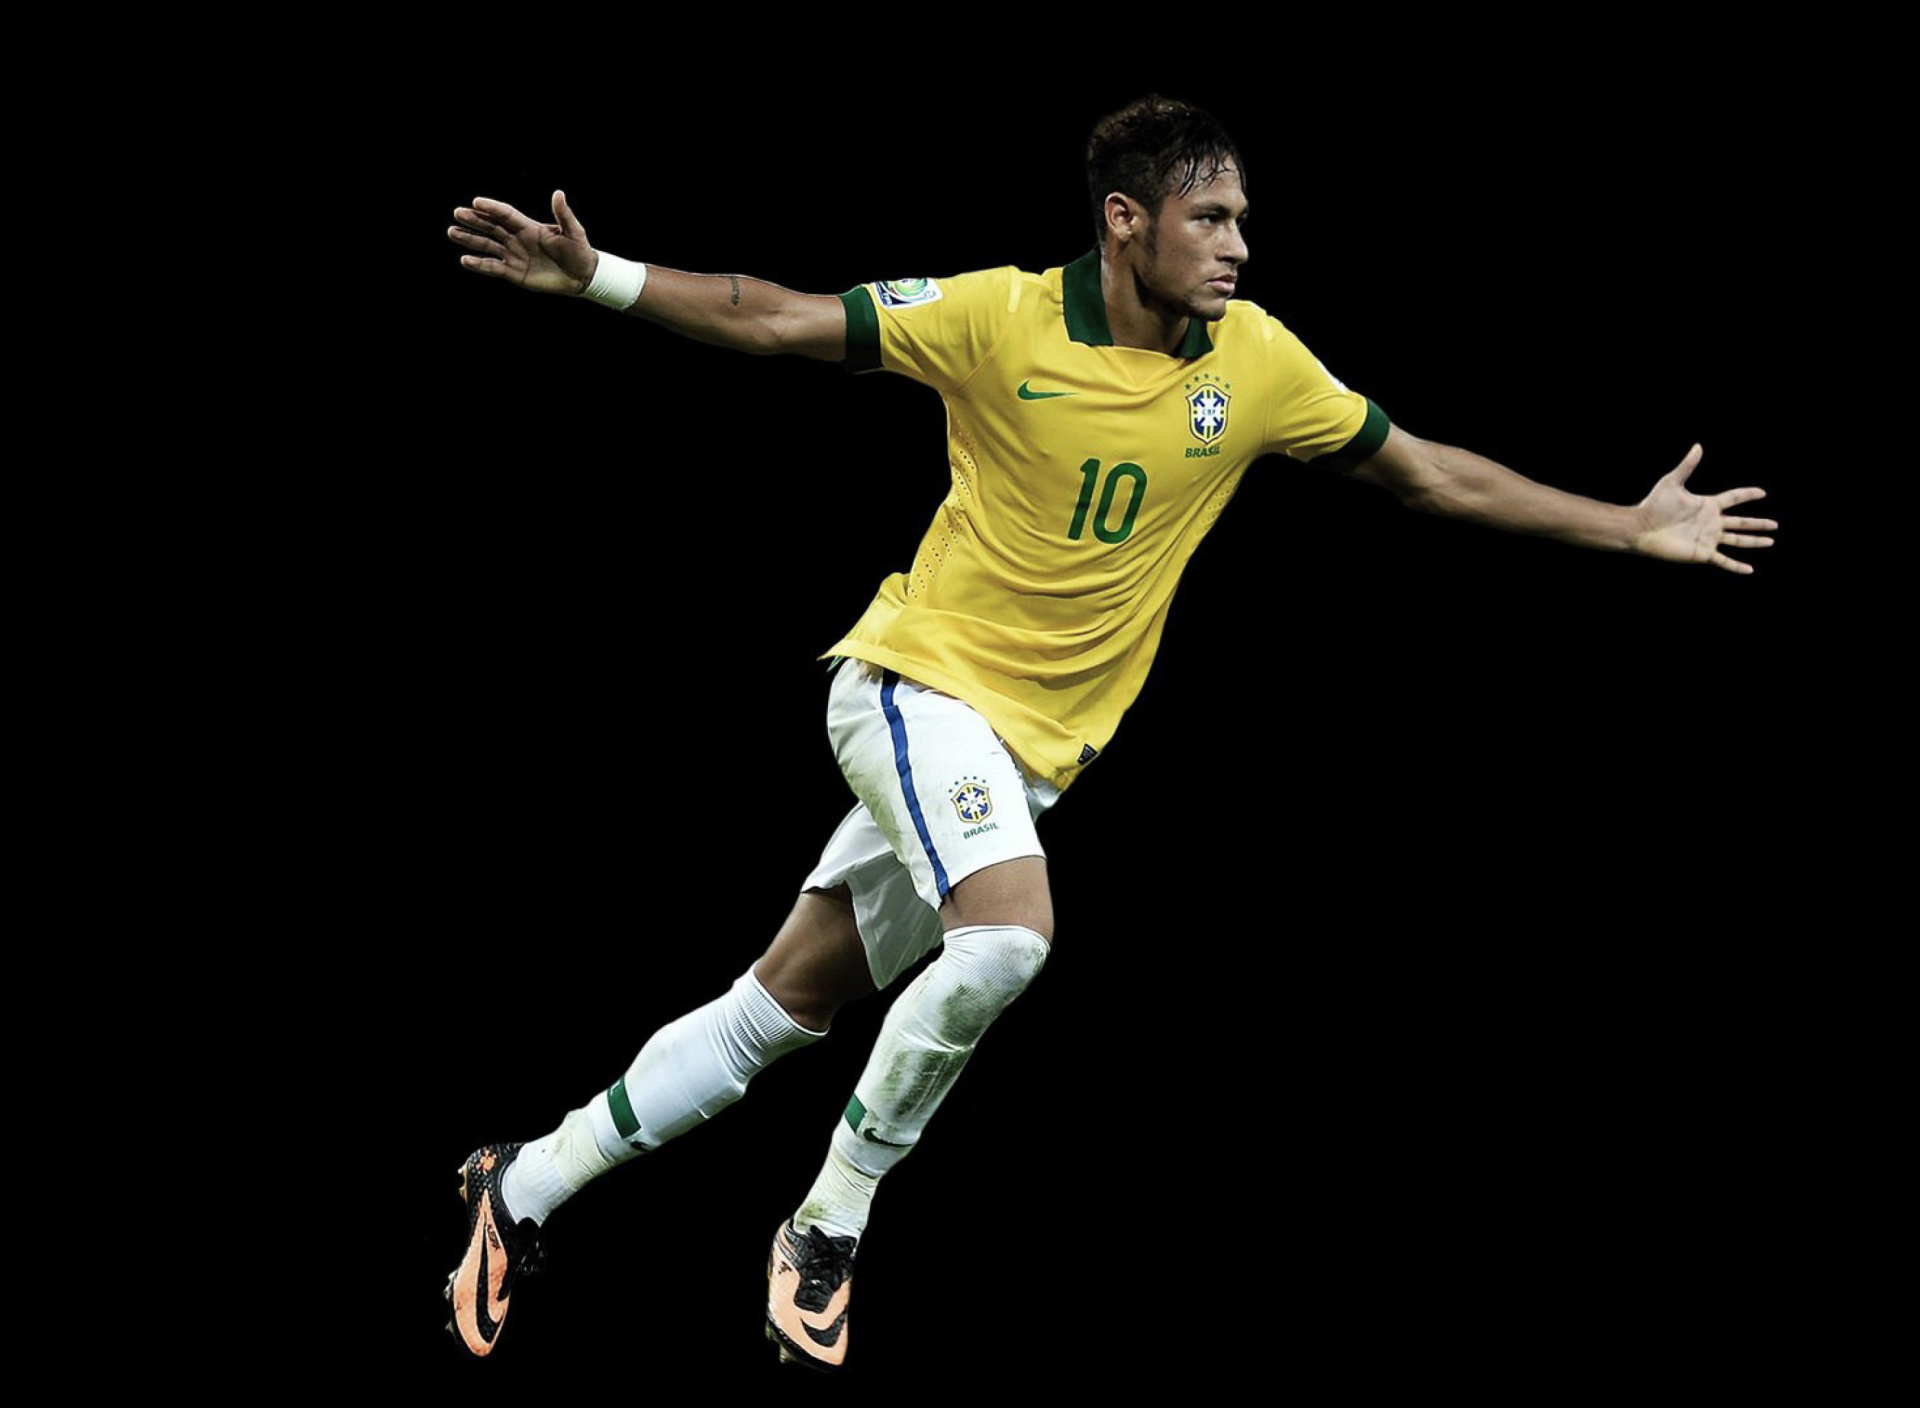 Das Neymar Brazil Football Player Wallpaper 1920x1408